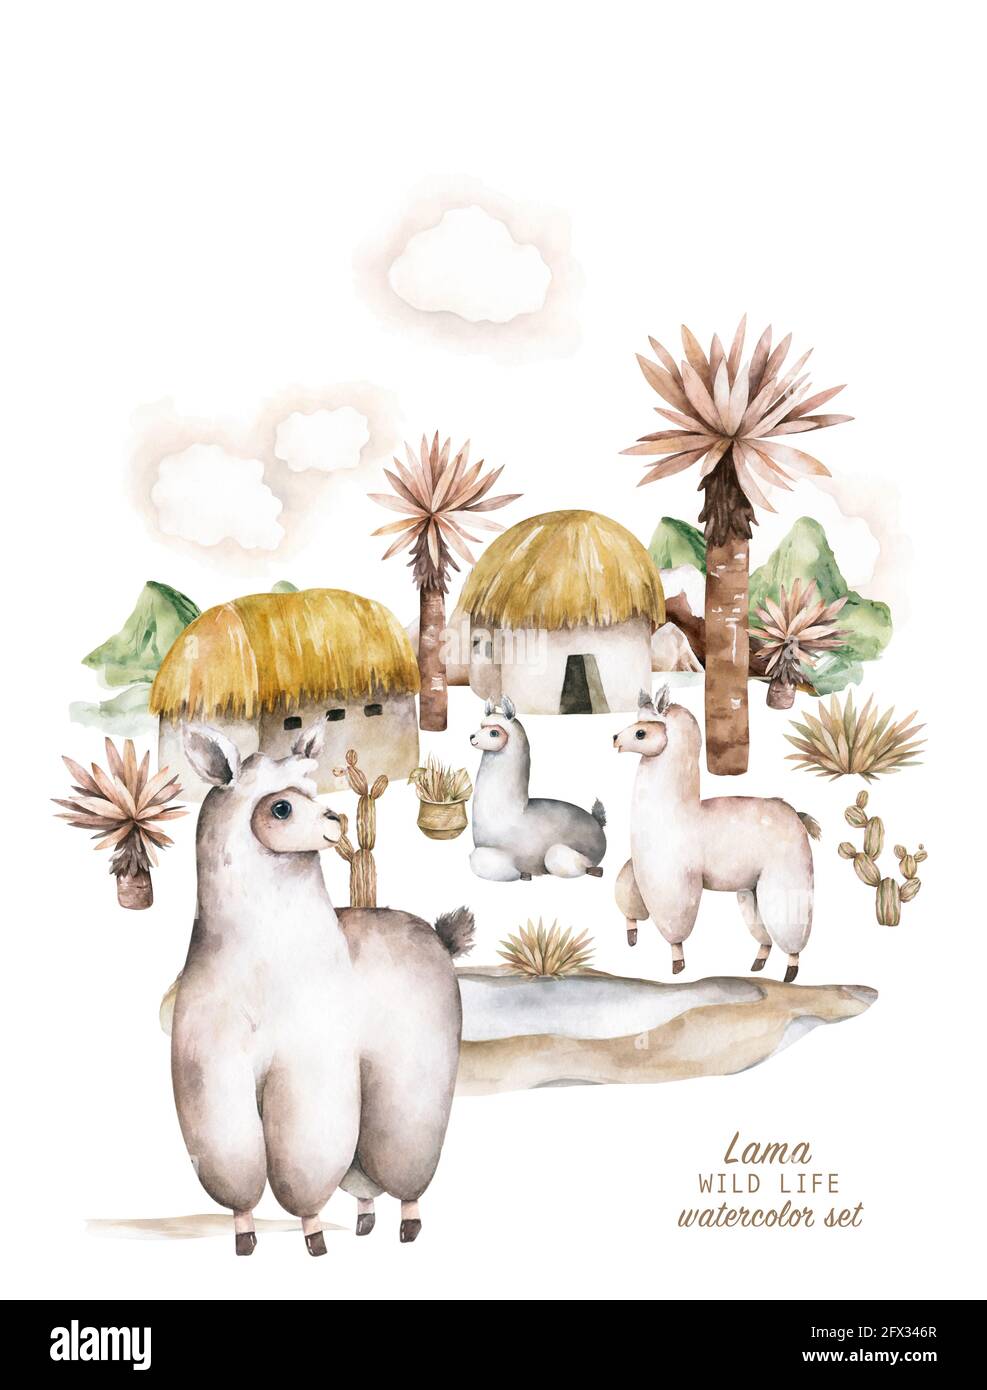 Baby doccia per ragazzo, ragazza. Carino llamas alpaca personaggi sorridenti, a piedi, nel deserto del Perù paesaggio con cactus. Divertente famiglia di animali lama messicana Foto Stock